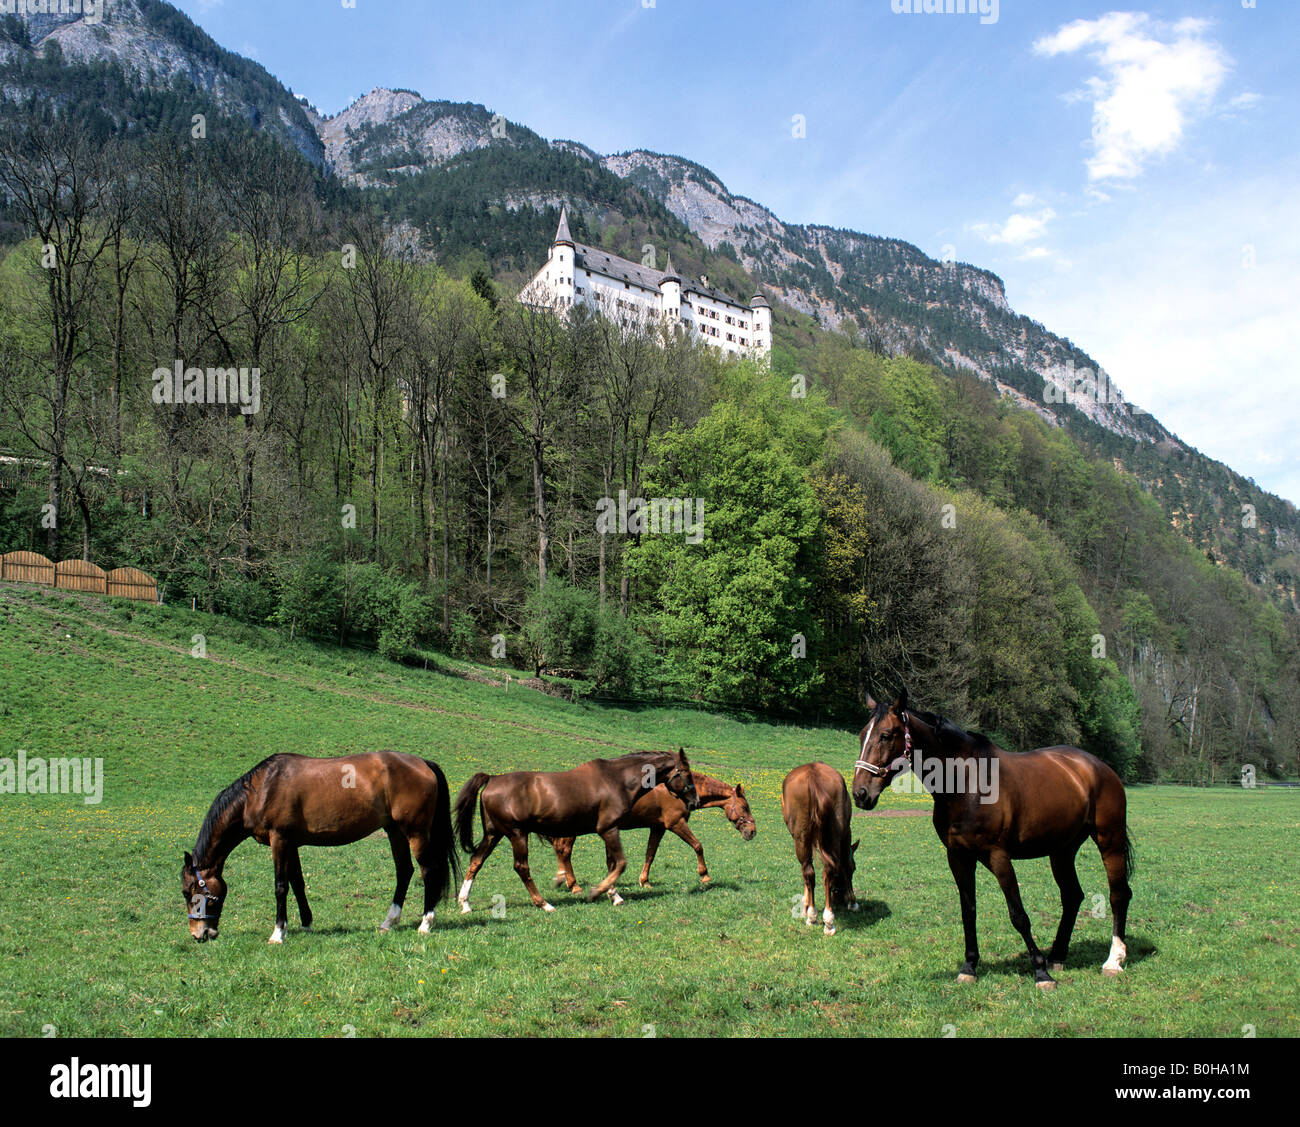 Horses on a paddock, Tratzberg Castle, Inn valley, Tyrol, Austria Stock Photo